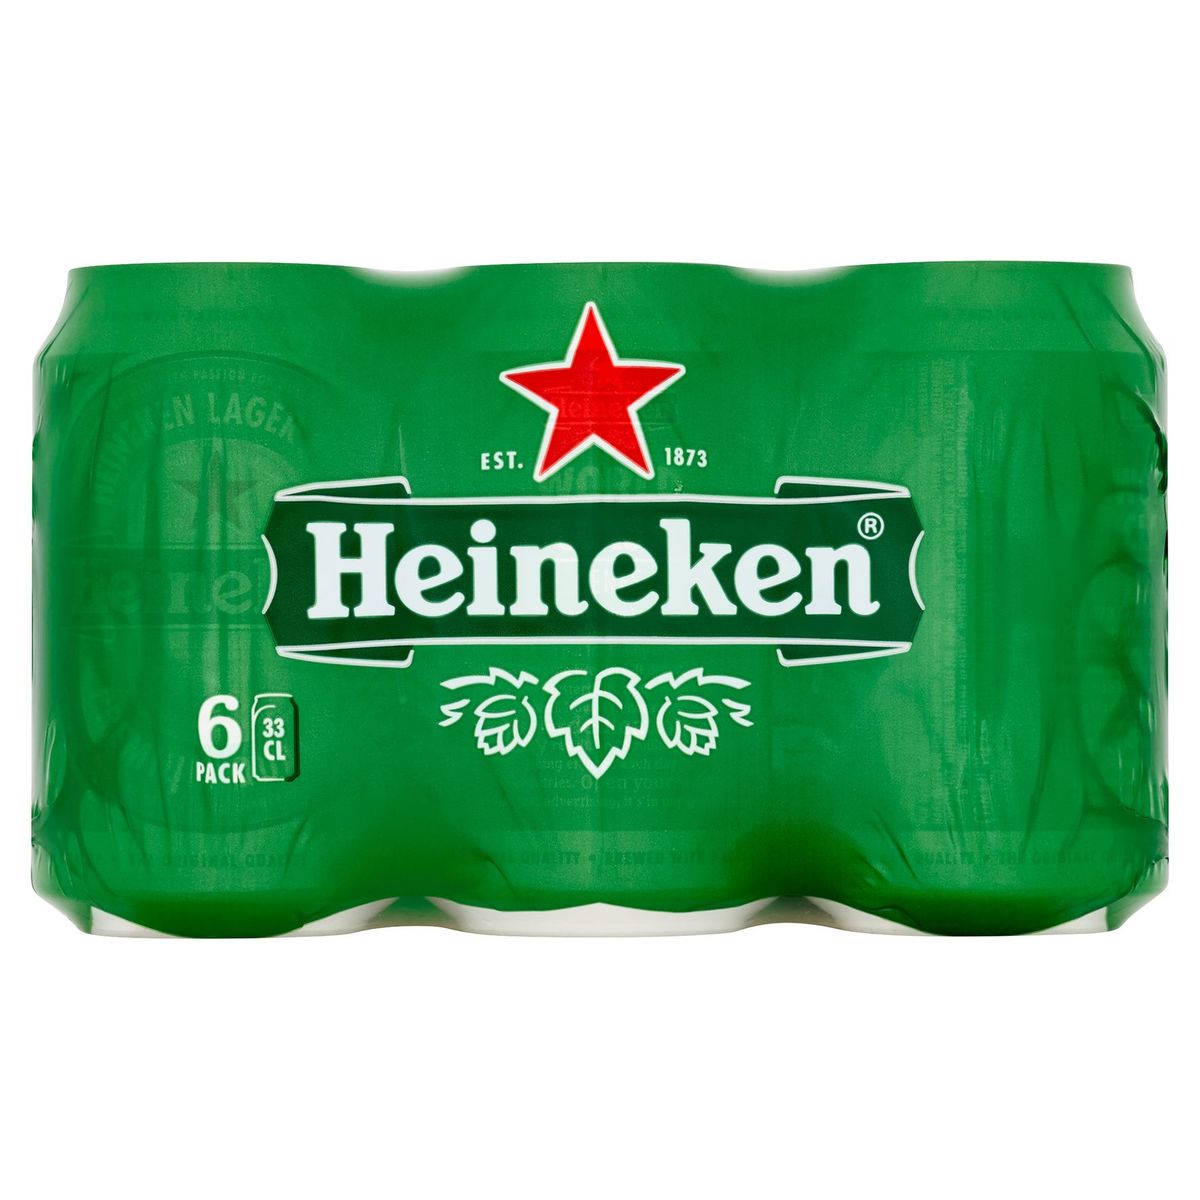 Heineken Blond bier Pils 5% ALC 6 x 33 cl Blik